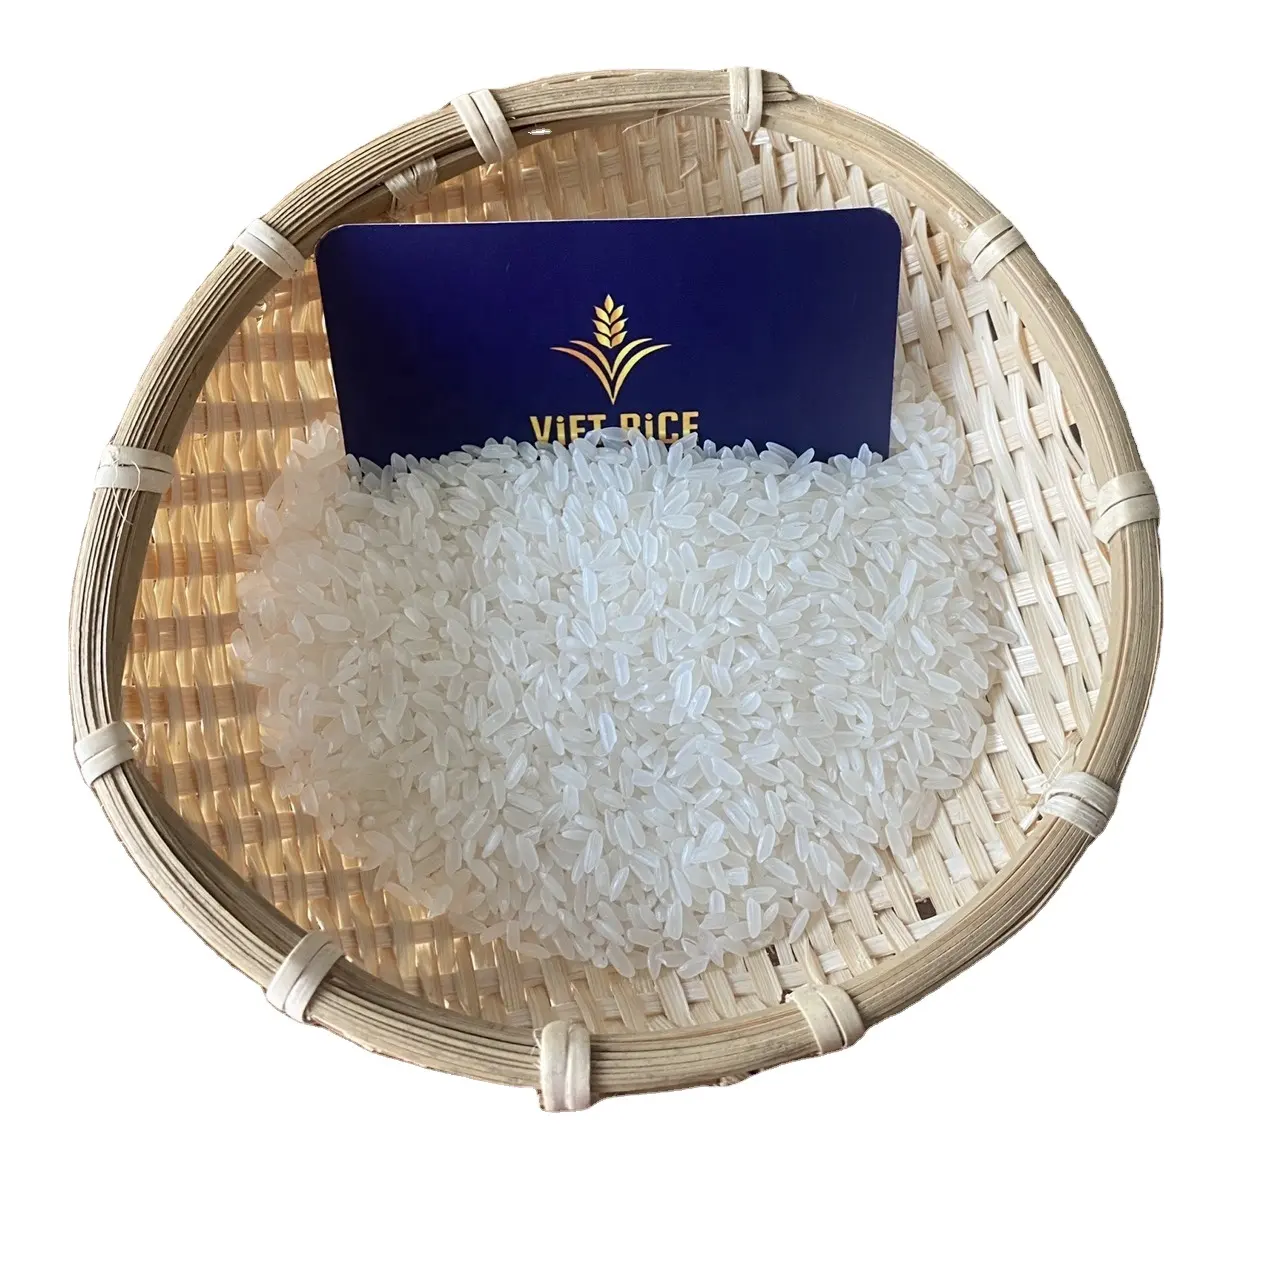 ВЬЕТНАМСКИЙ РИС-отличное качество, доступная цена, супер средний рис с лучшим качеством, богатое питанием, органическое питание